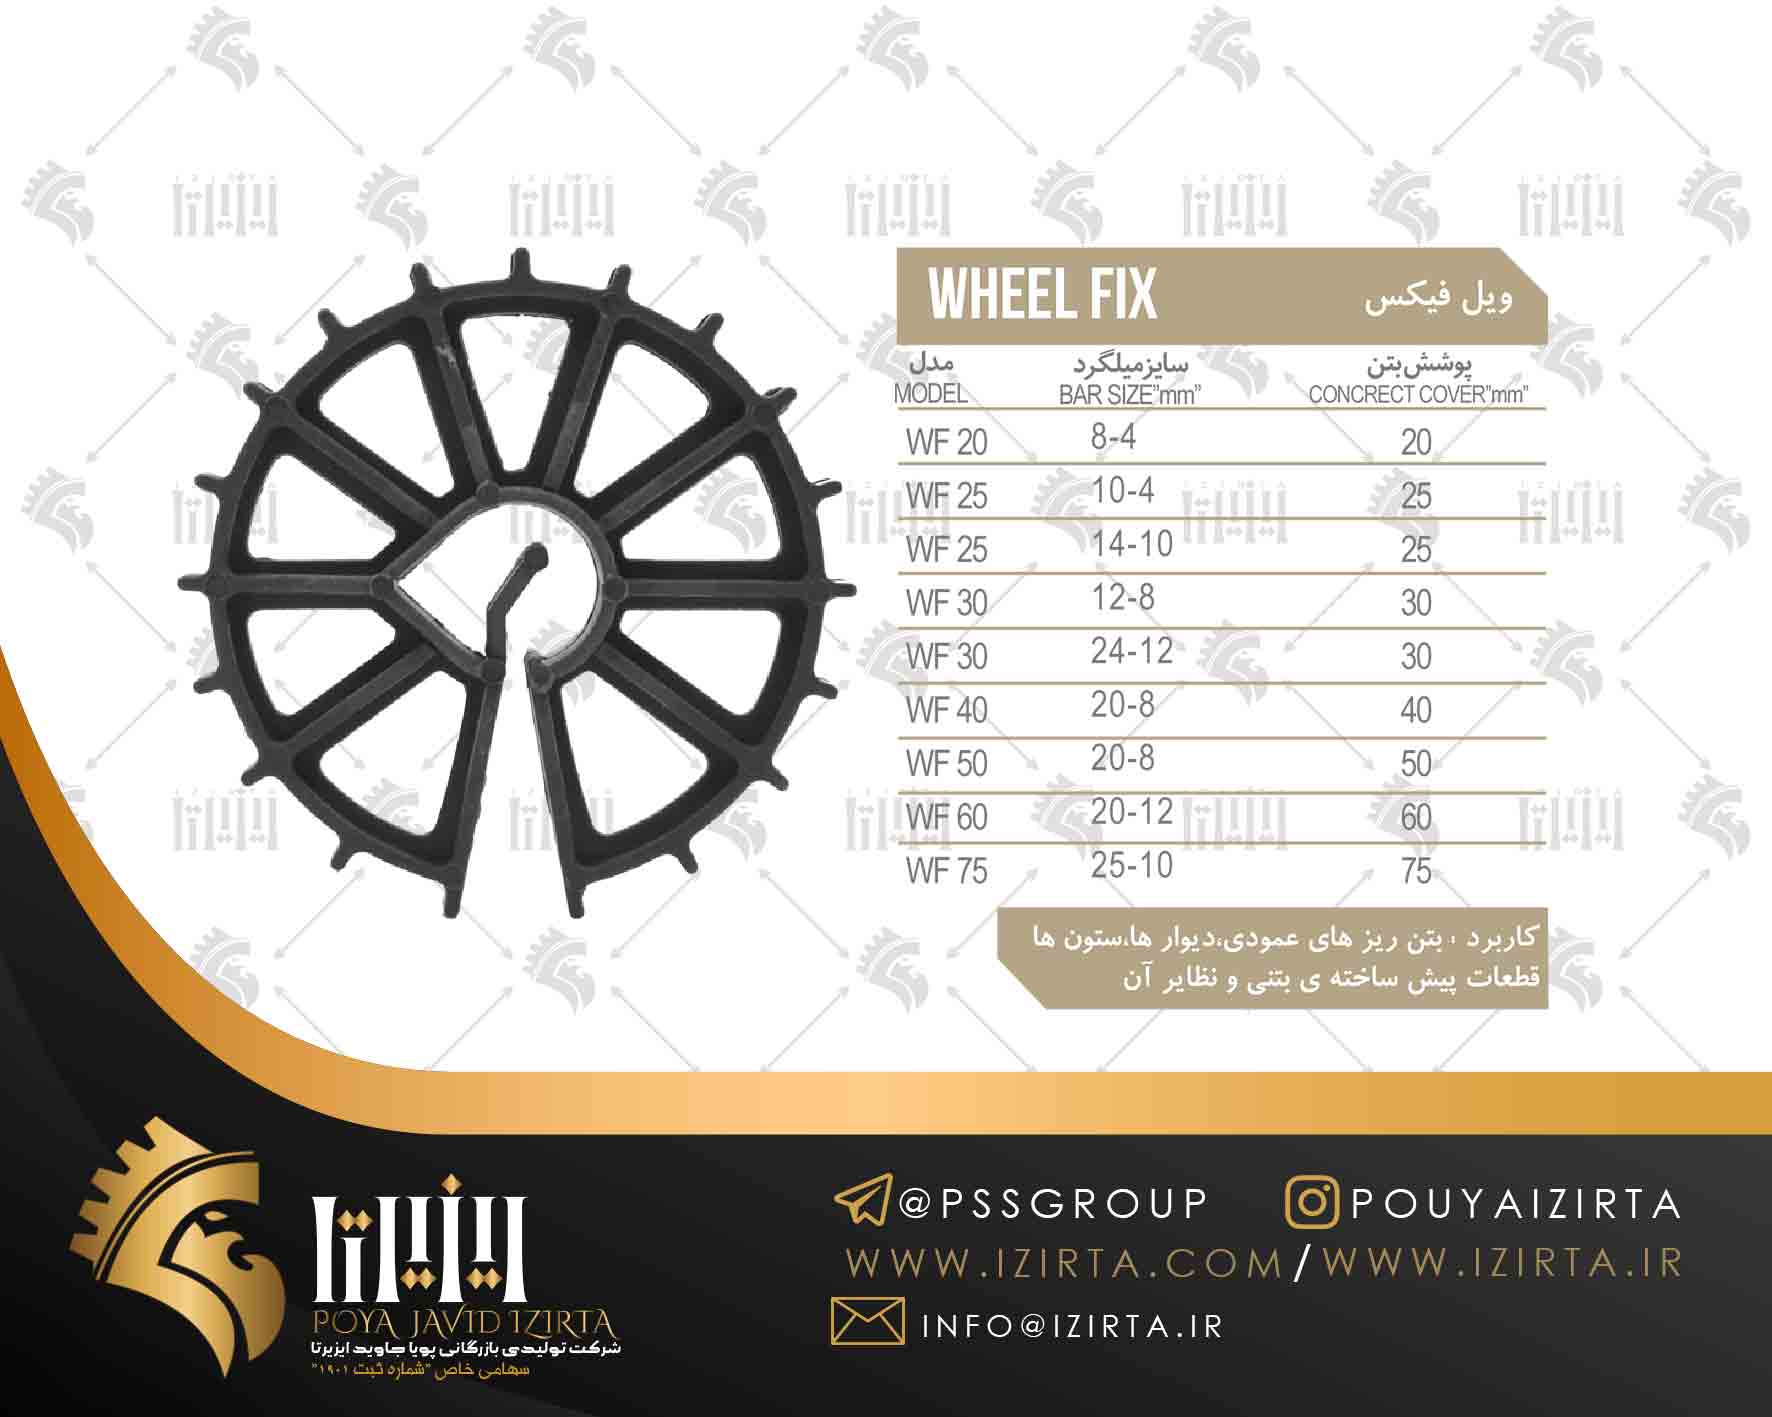 ويل فيكس ( wheelfix )